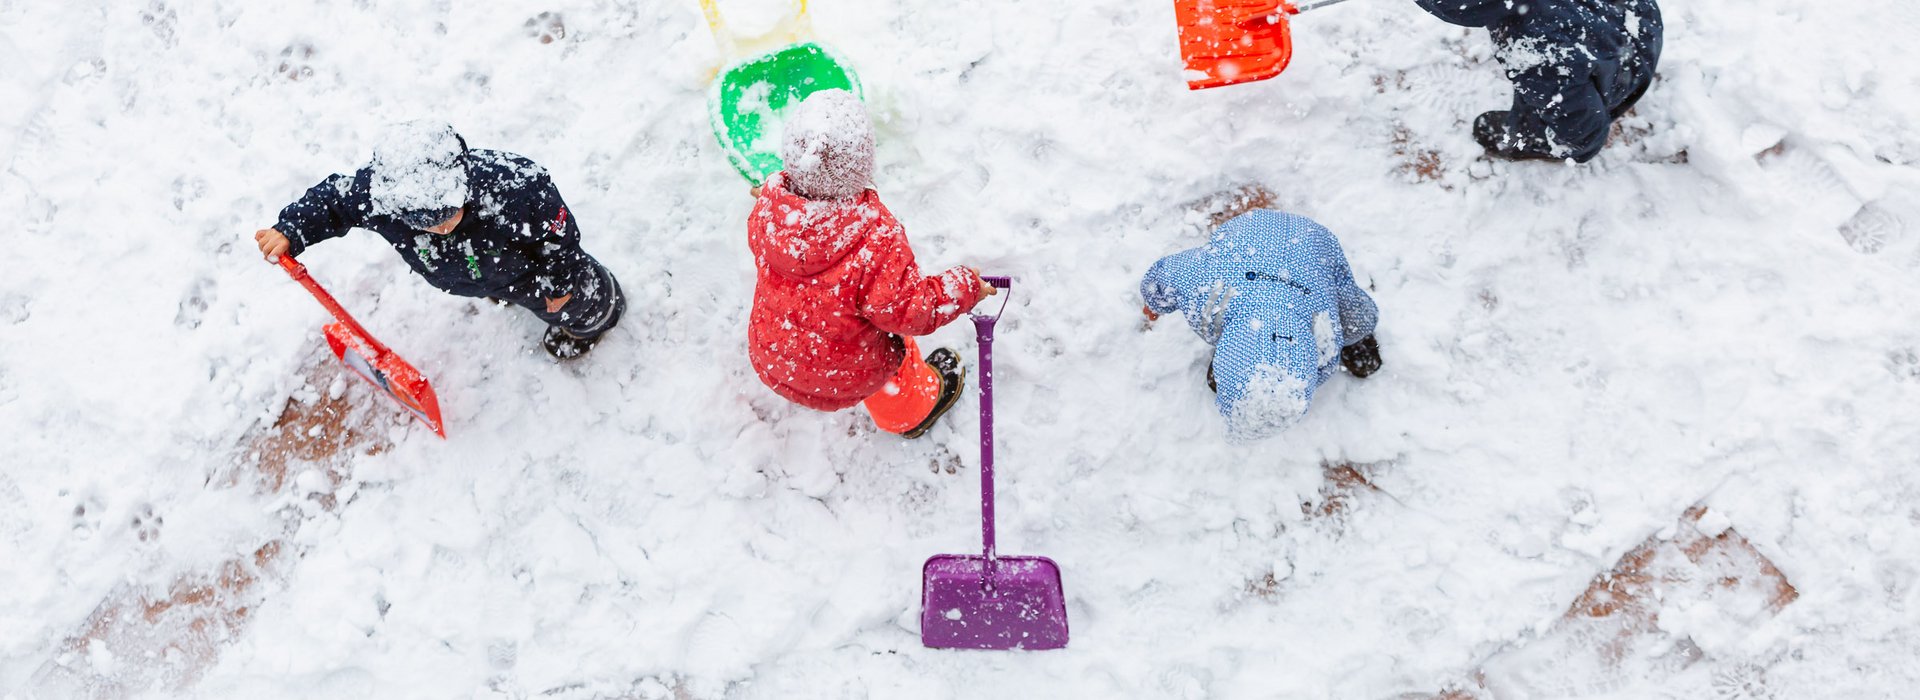 Kinder spielen im Schnee mit Schneeschippen.